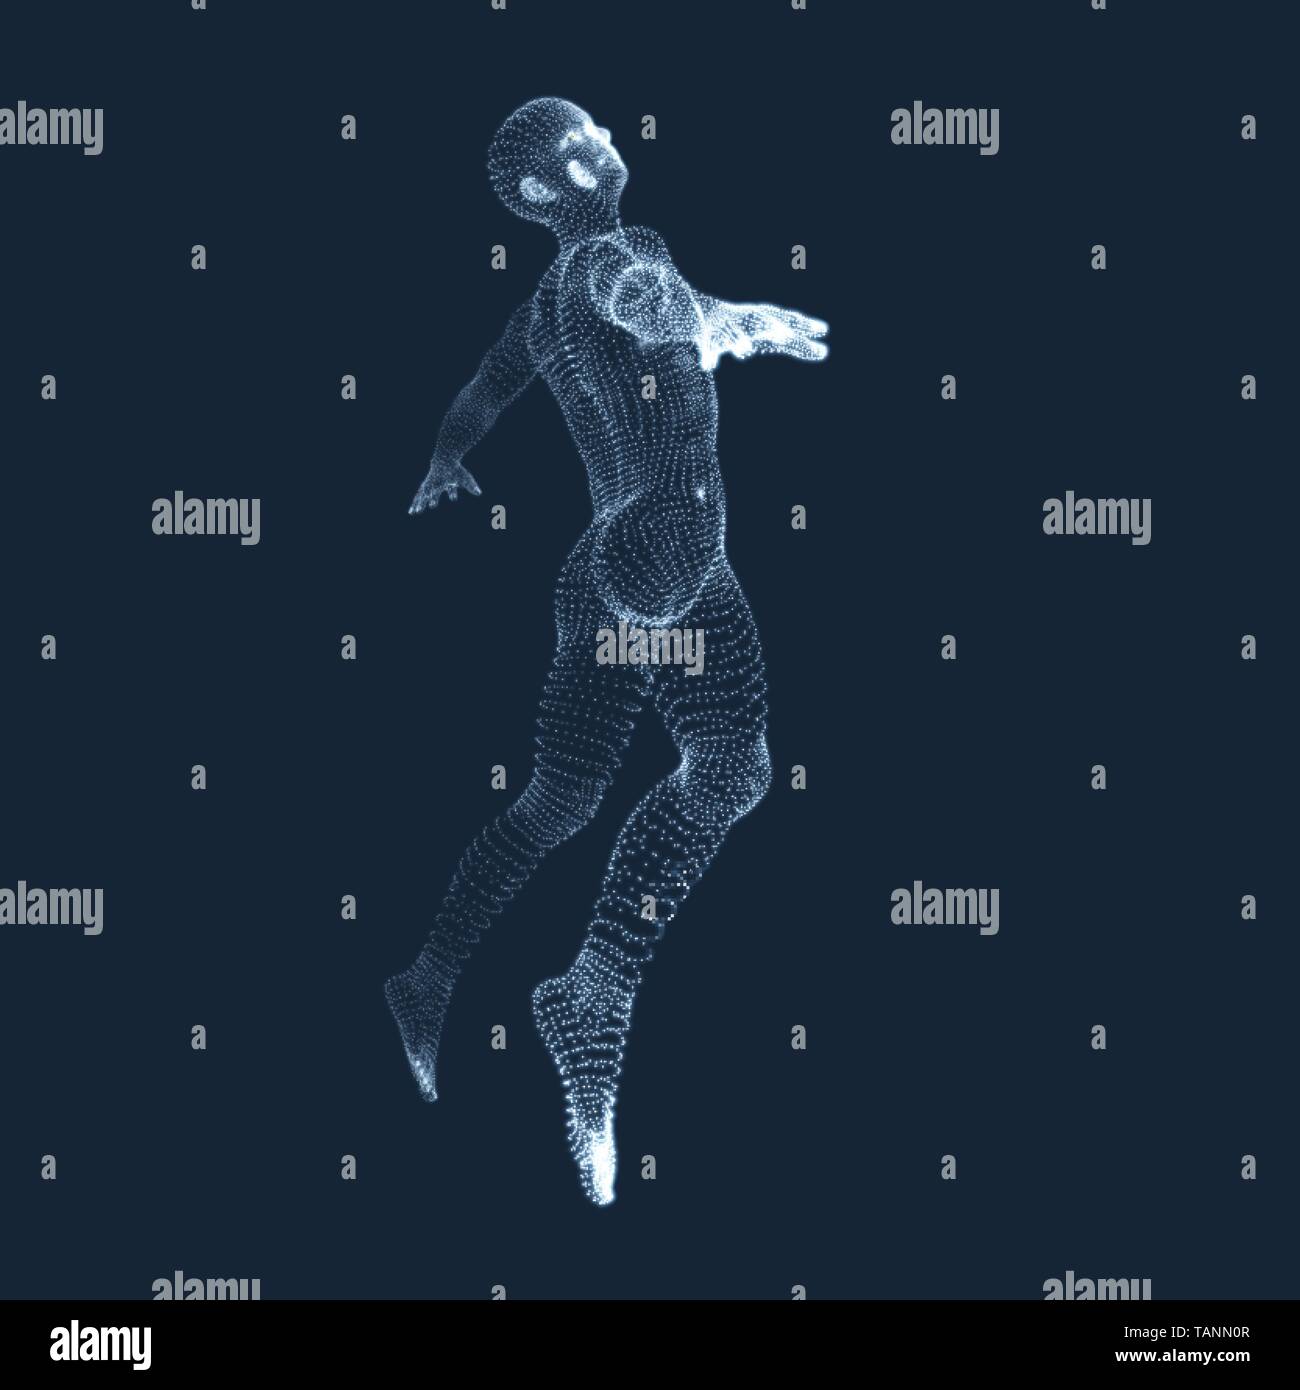 Jumping Man. Vektorgrafiken aus Teilchen. 3D-Modell des Menschen. Human Body Model. Body Scanning. Ansicht von der menschlichen Körper. Stock Vektor